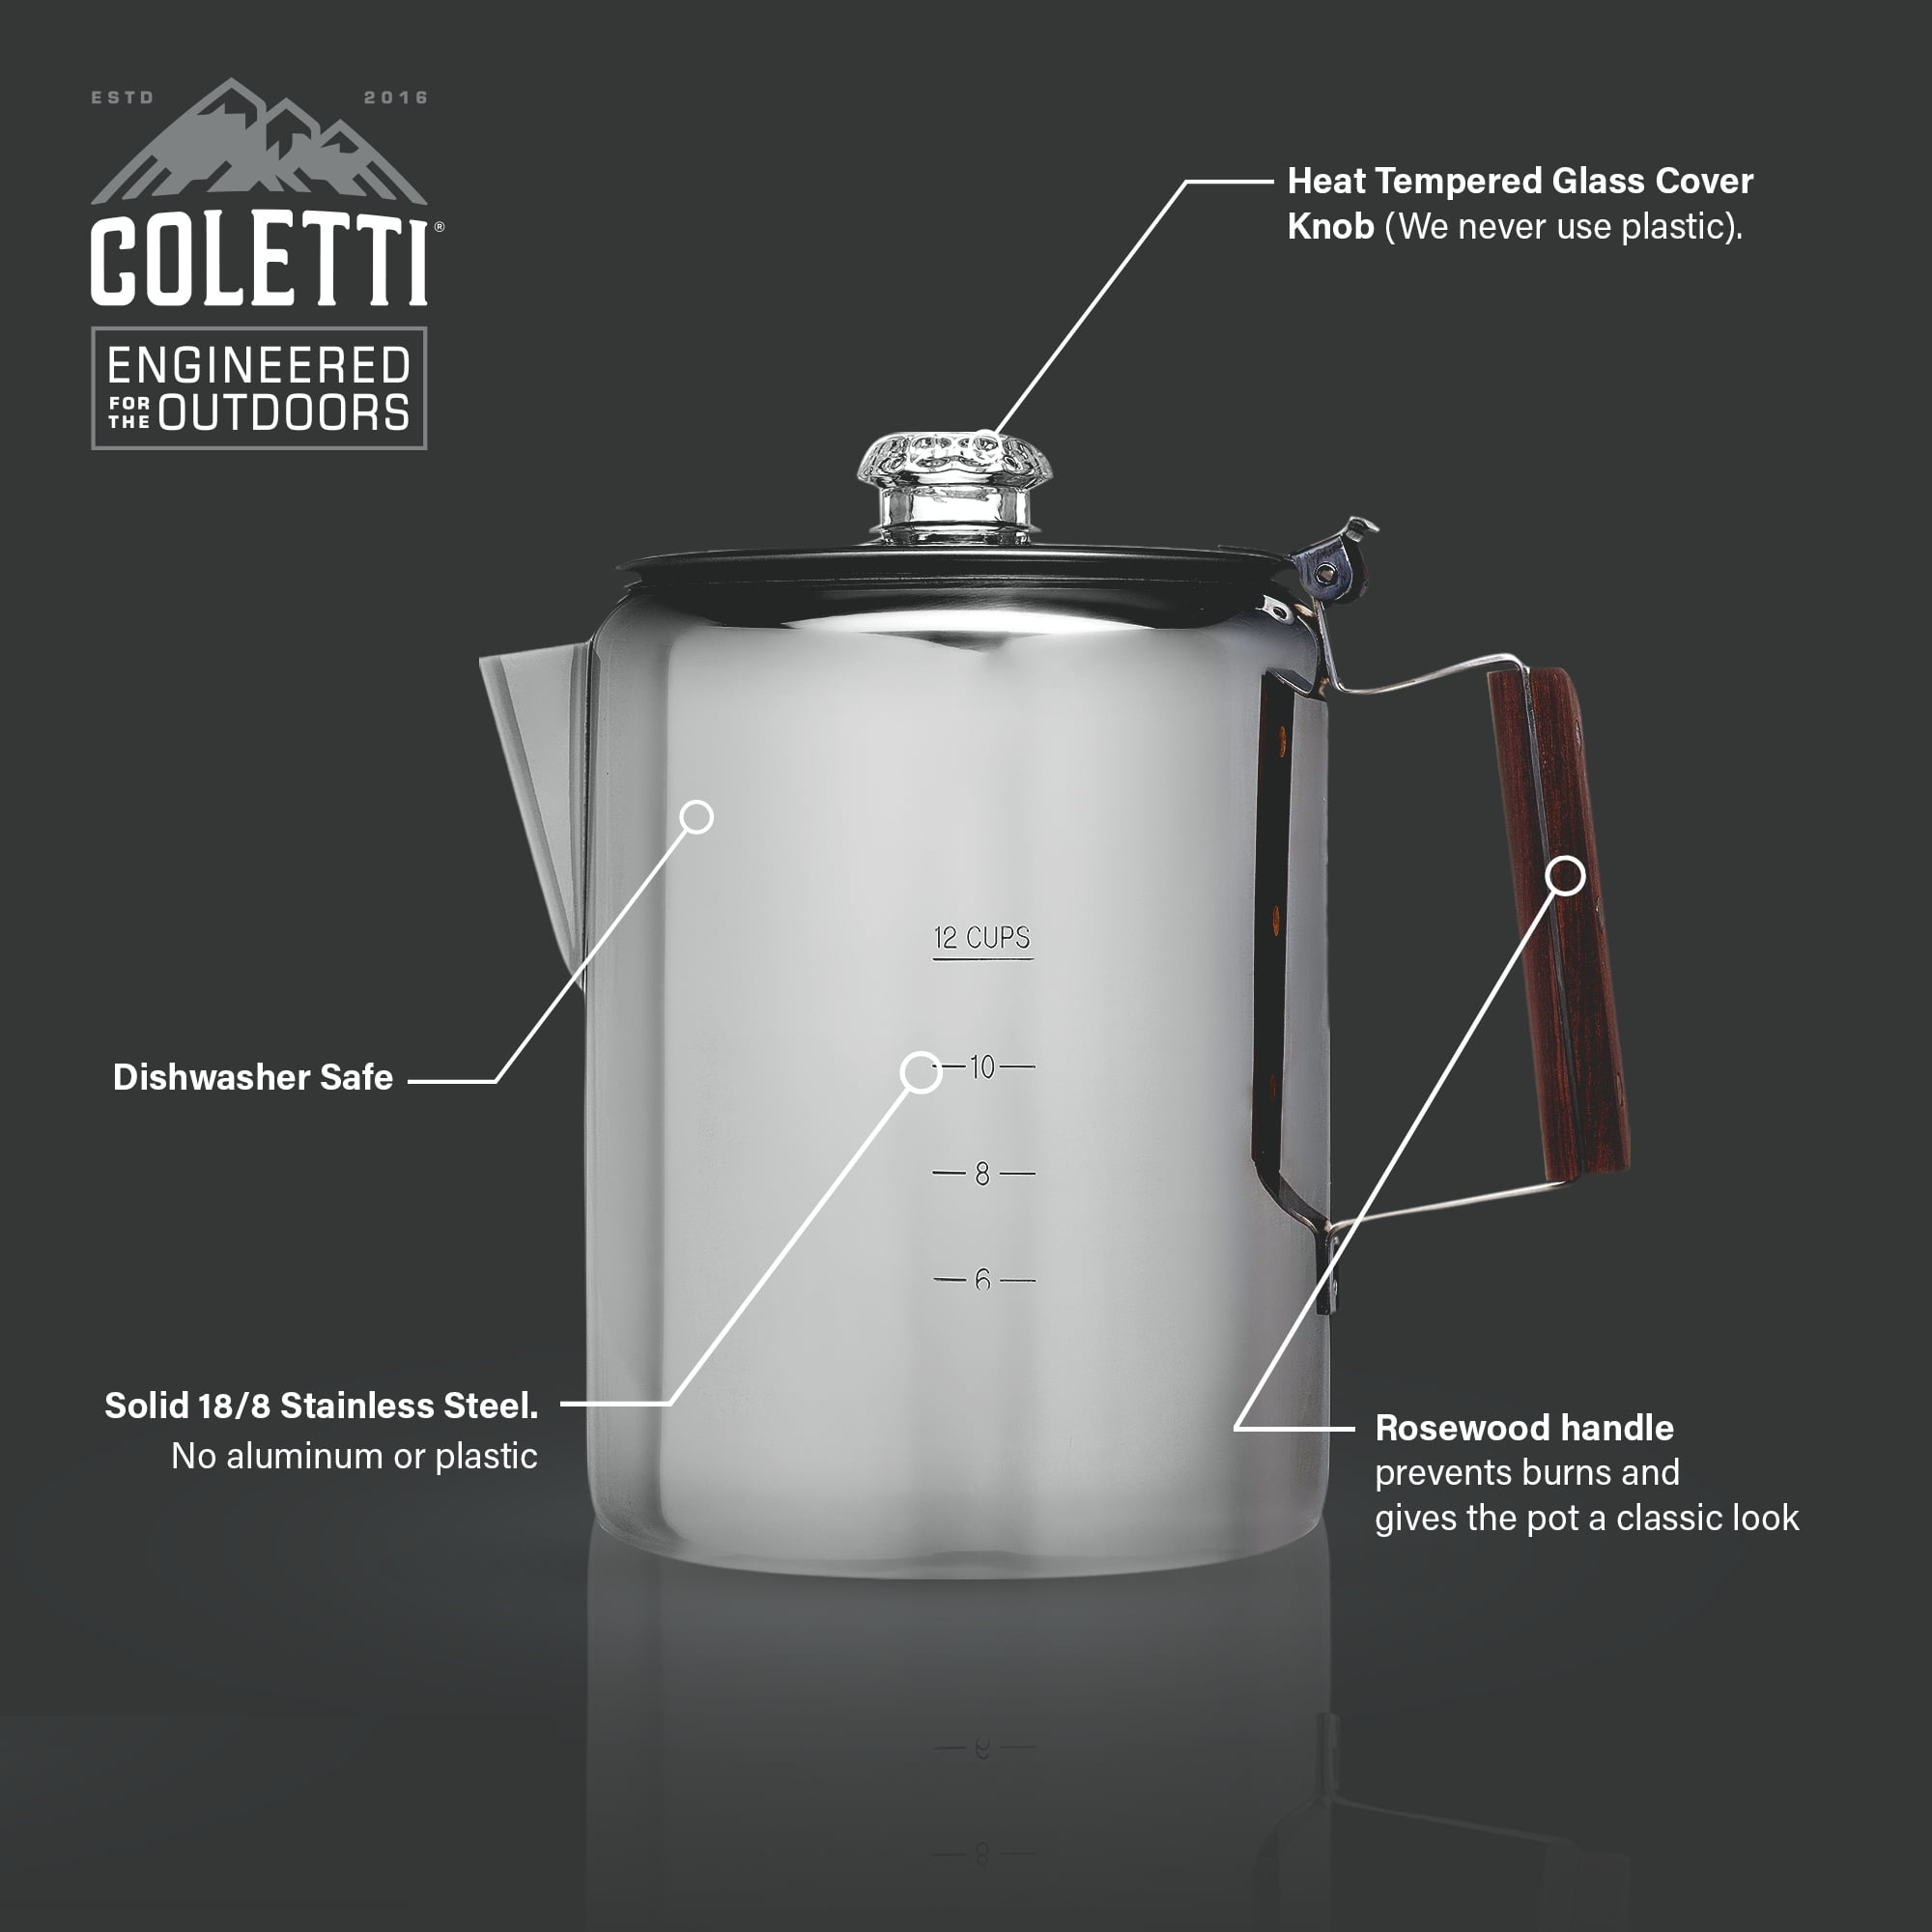 COLETTI Bozeman Camping Coffee Pot – Coffee Percolator